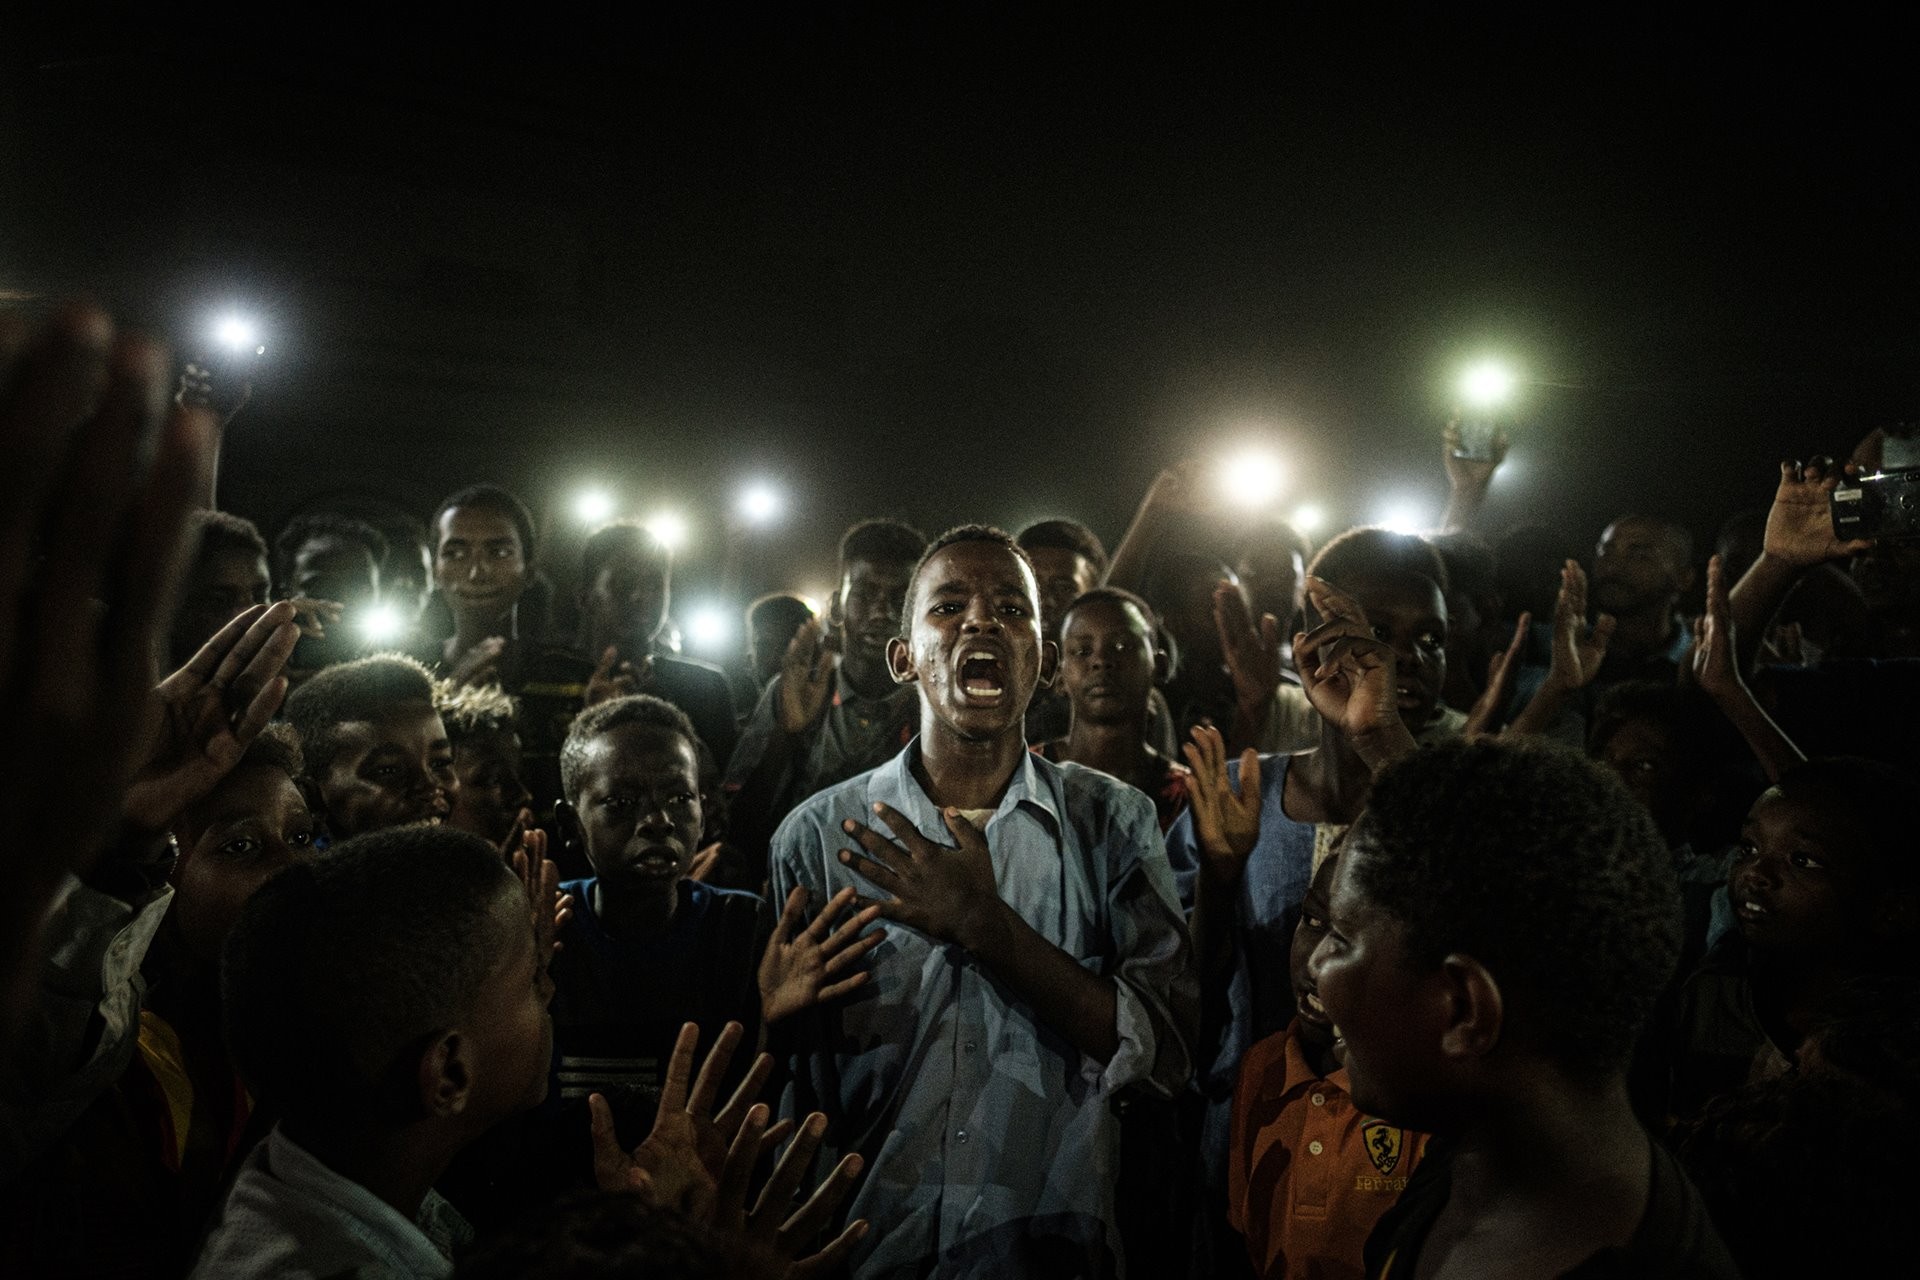 Фото года, 2020. Участник протестов против режима Омара аль-Башира читает стихи в свете телефонов при отключенной электроэнергии в Хартуме, Судан. Автор Ясуёси Тиба